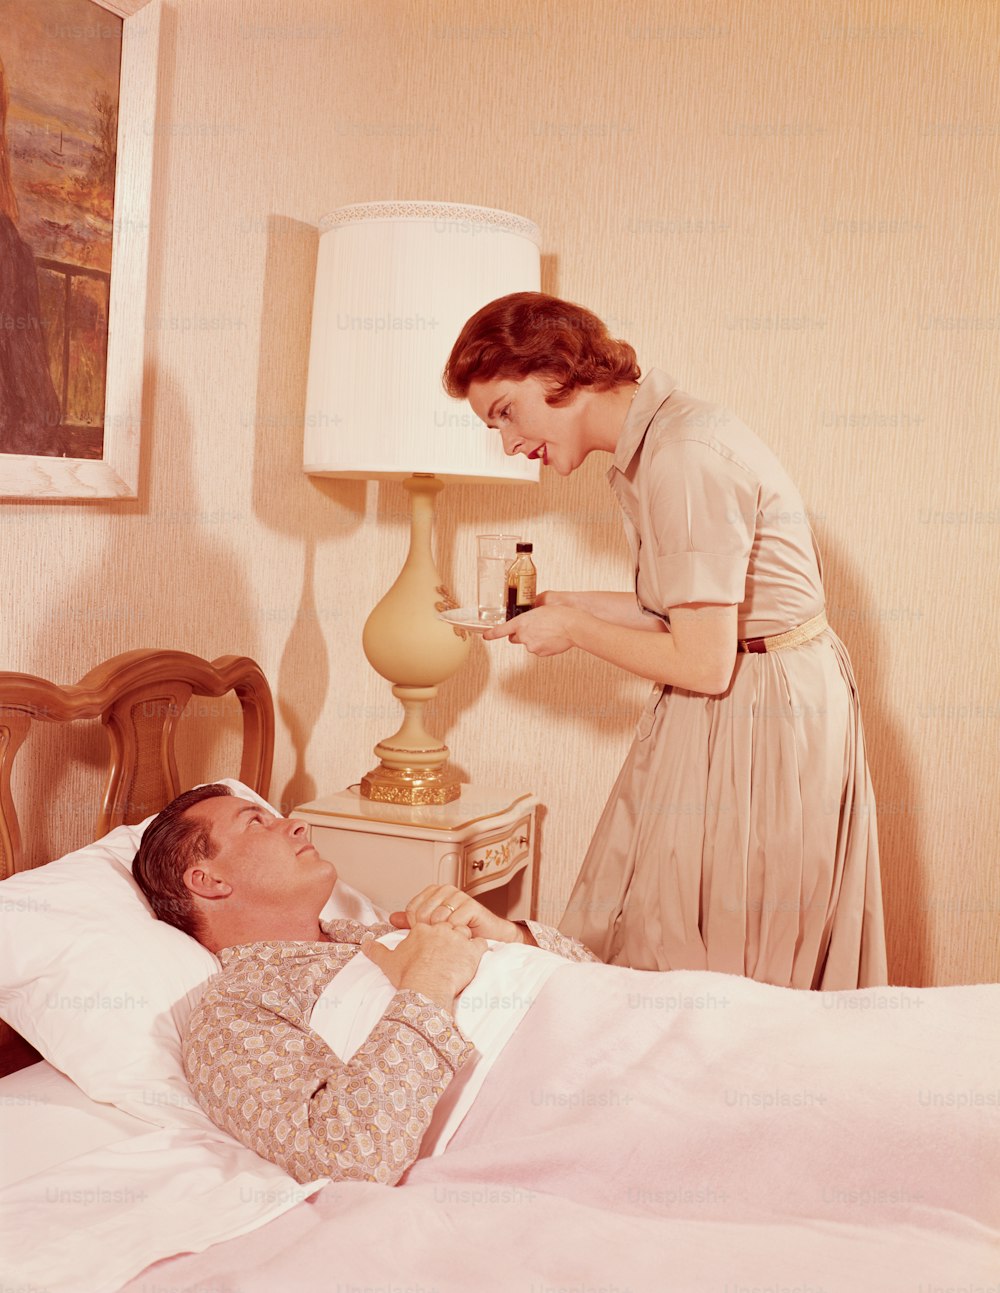 STATI UNITI - 1960 circa: Donna che trasporta vassoio di medicine al marito malato a letto.